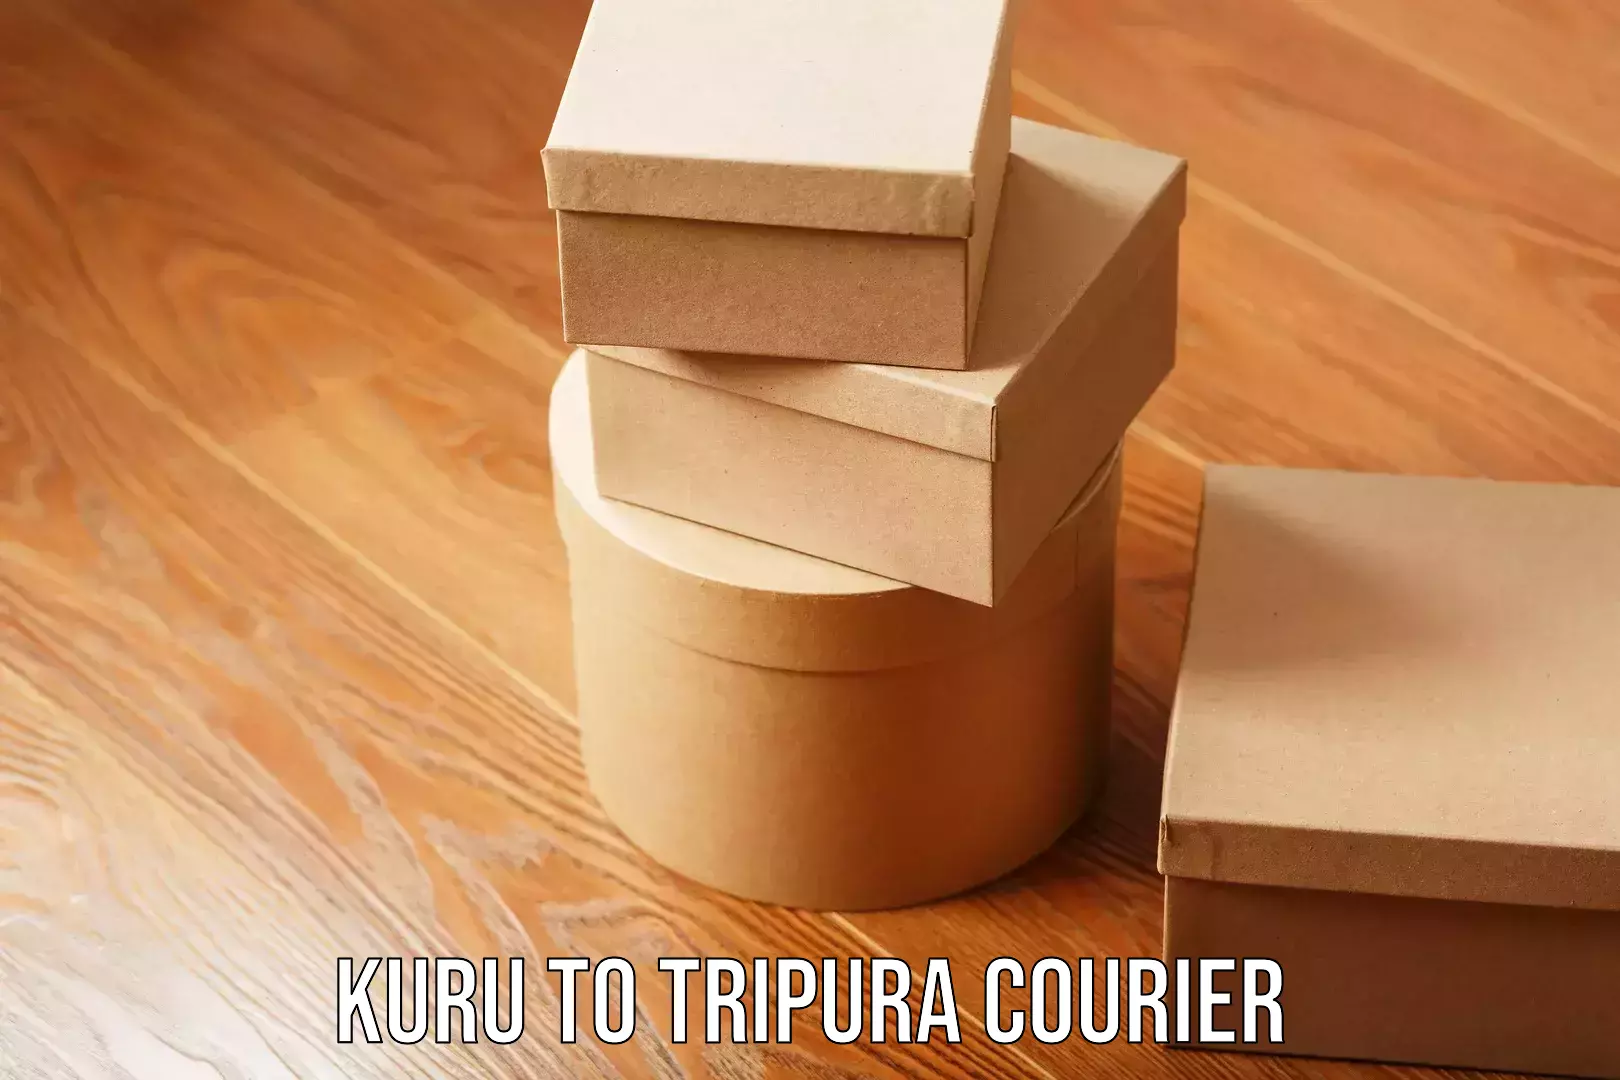 Stress-free household moving Kuru to Tripura